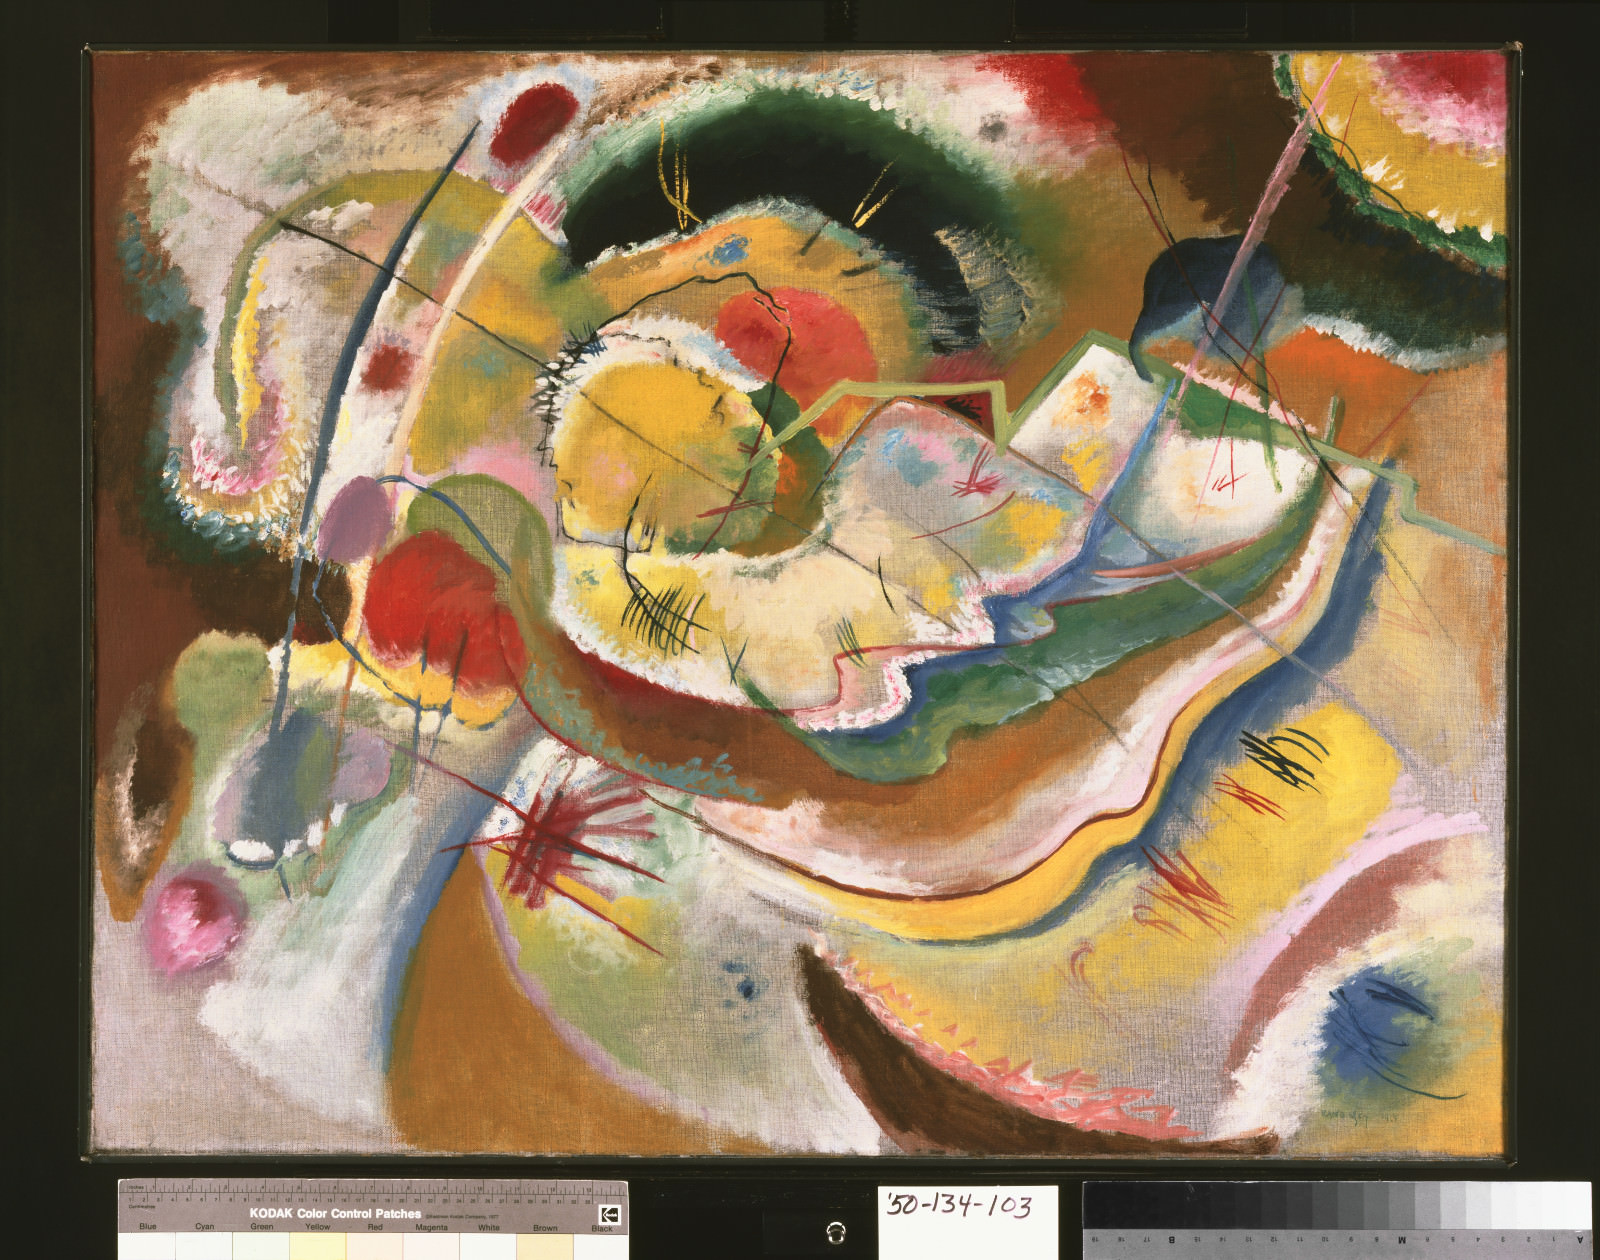 التين.. 4 - فاسيلي كاندينسكي, لوحة صغيرة مع الأصفر (ارتجال), 1914, زيت على قماش, 31 x 39 5/8 polegadas (78.7 x 100.6 cm) مؤطر: 32 3/4 x 41 1/2 x 2 1/2 poبوصة83.2 x 105.4 x 6x4 cmسم متحف فيلادلفيا للفنون, لويز والتر Arensberg مجموعة, 1950-134-103.